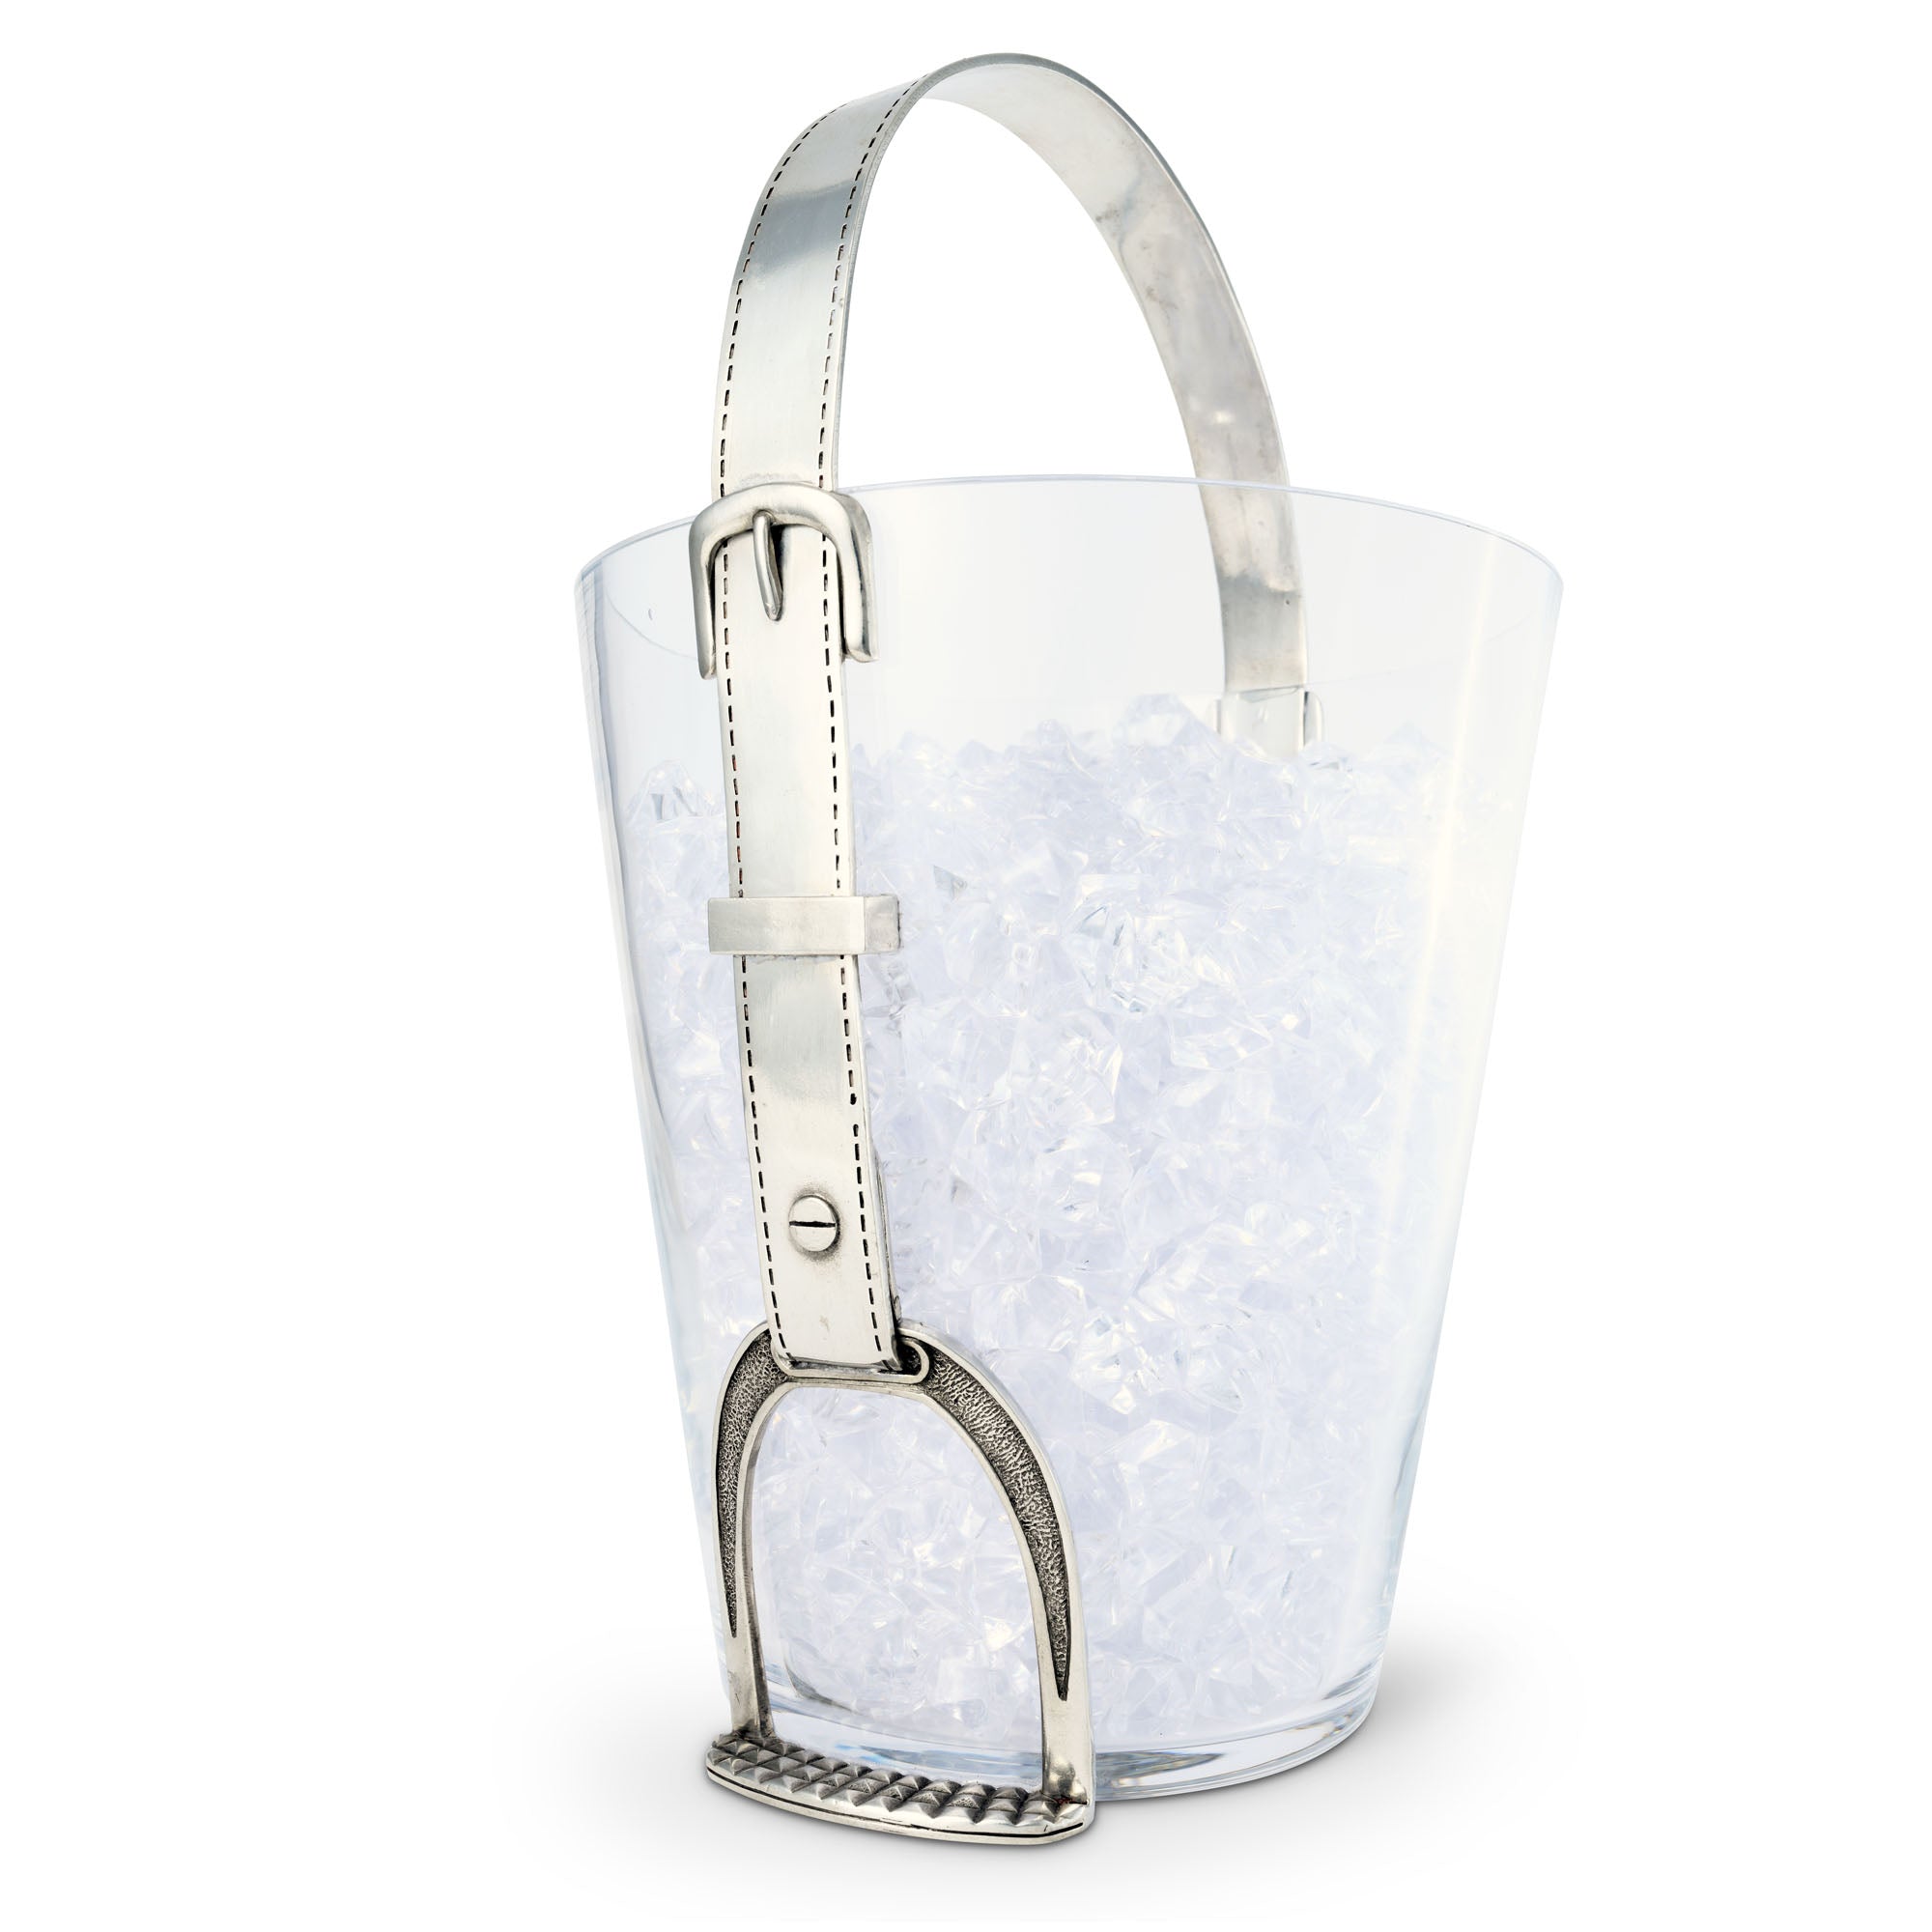 Vagabond House Stirrup Ice Bucket Product Image